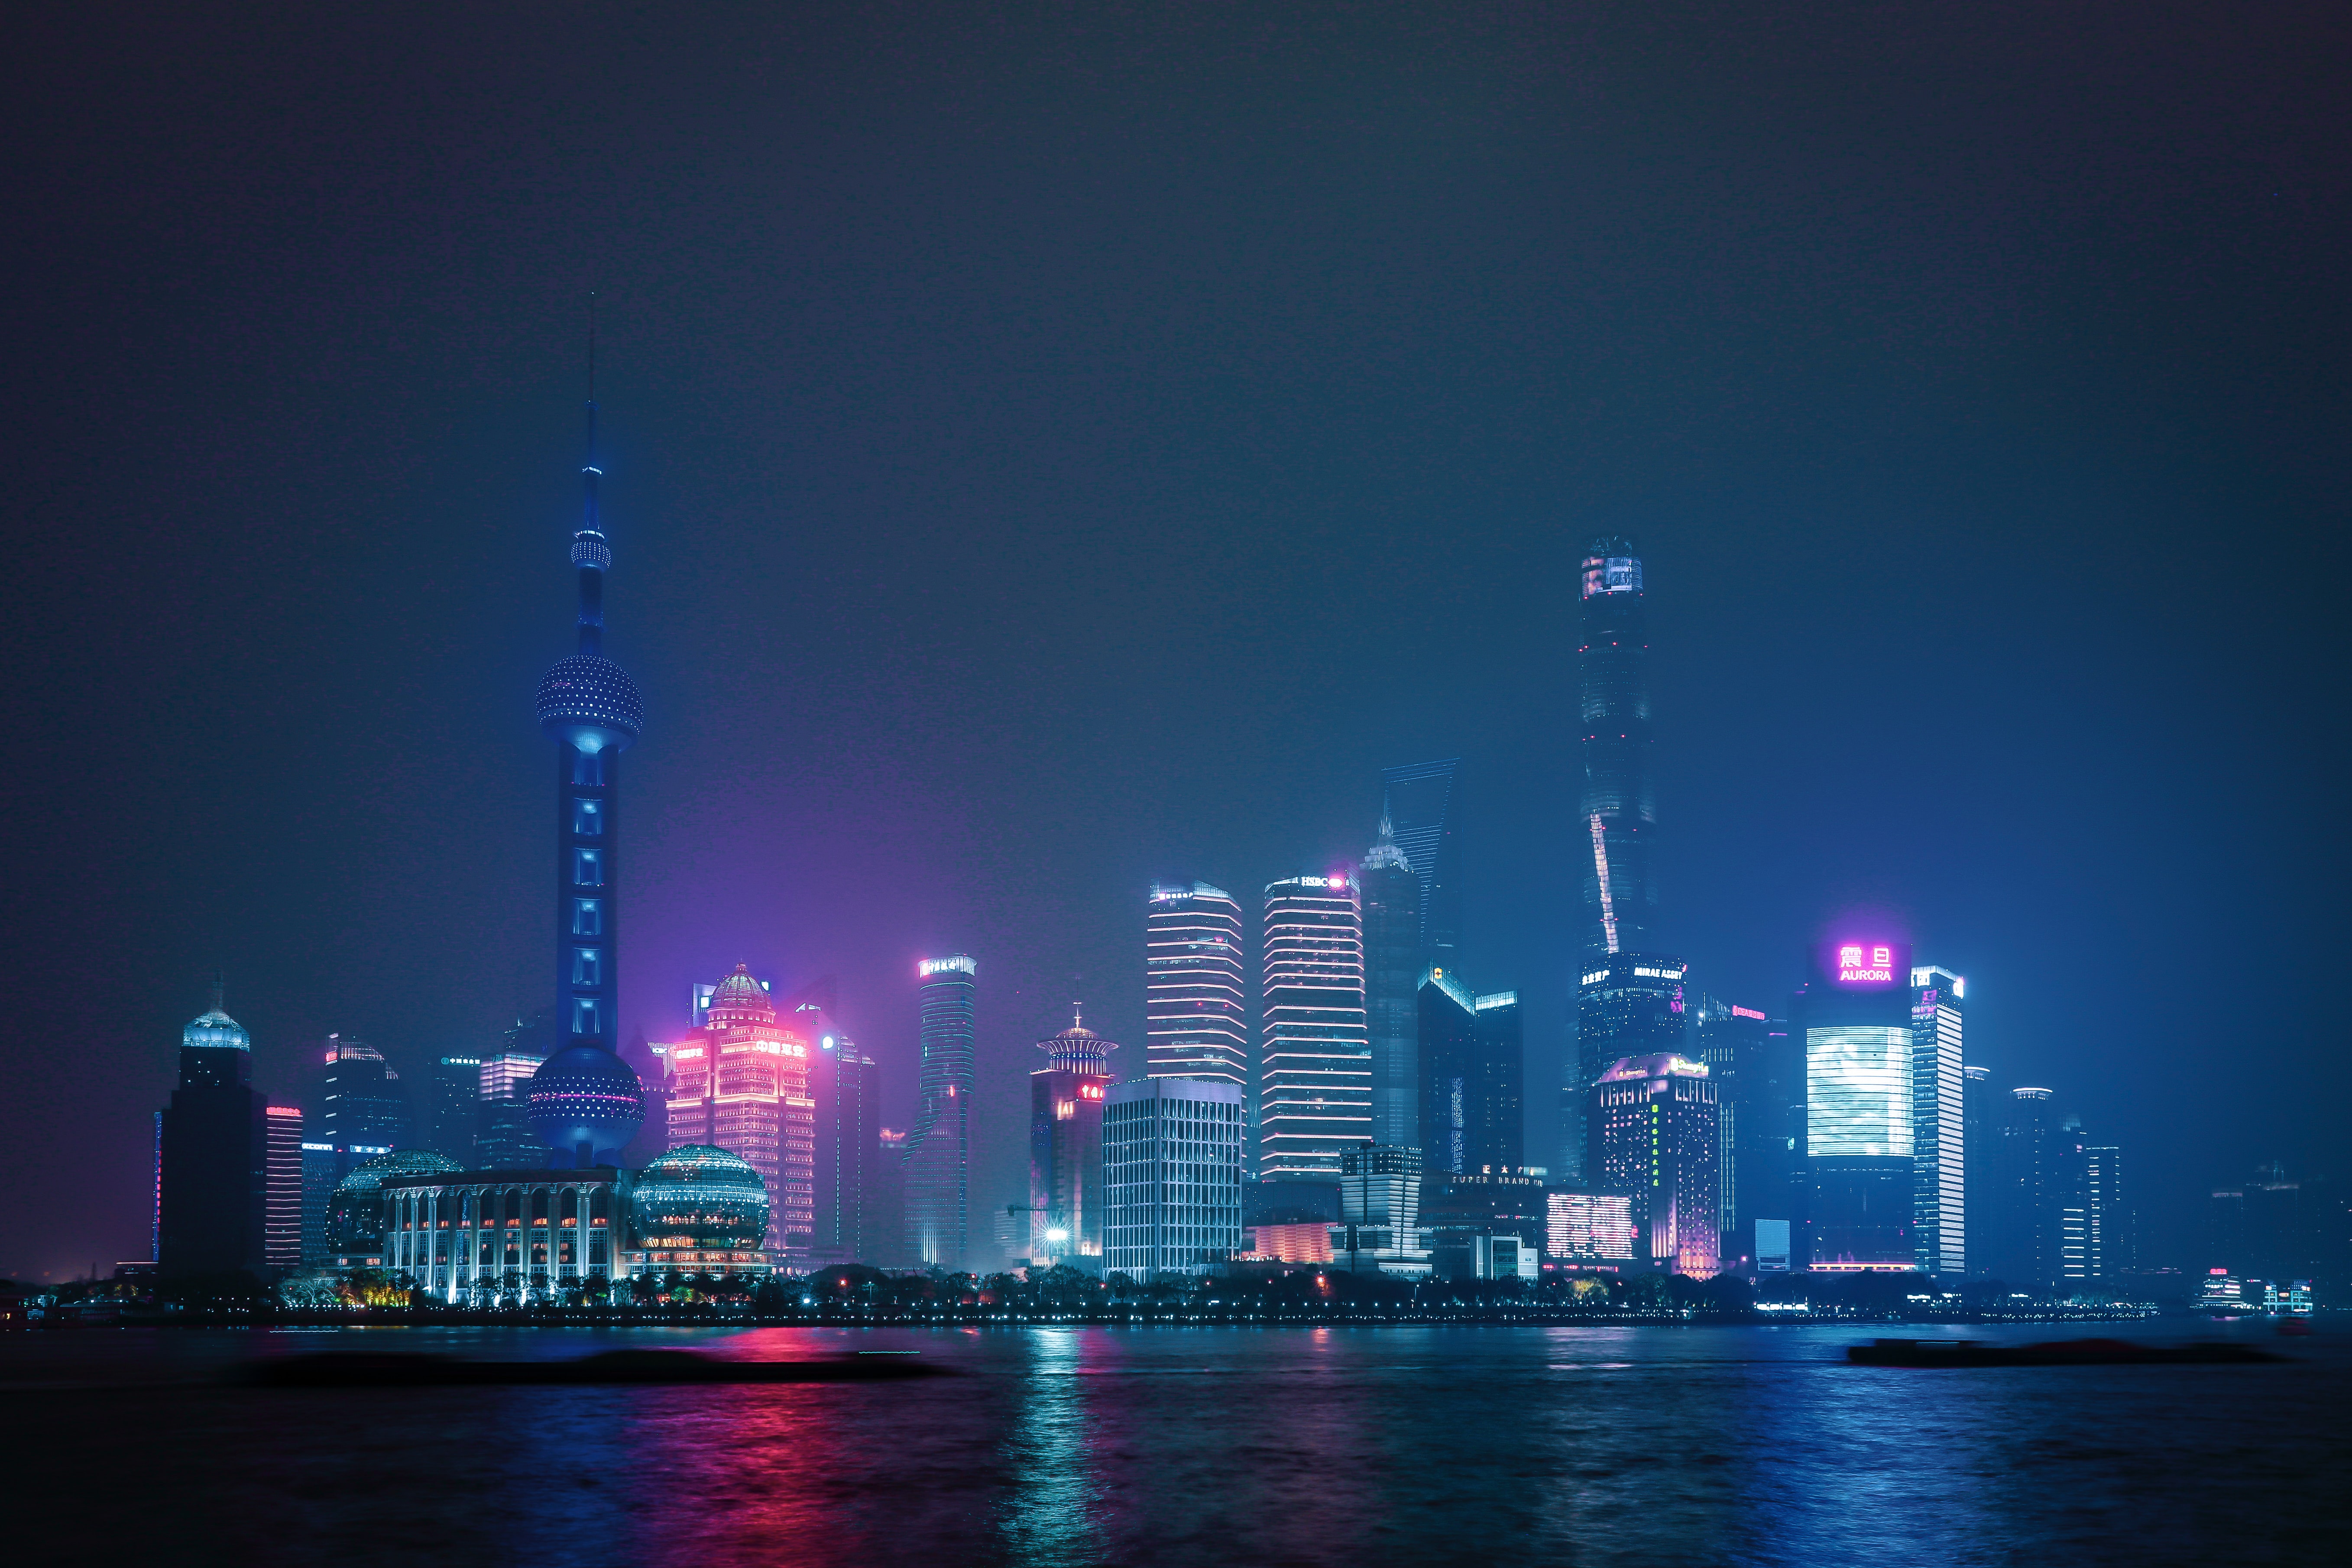 Thành phố phồn hoa và đầy màu sắc của Trung Quốc - Shanghai - sẽ đưa bạn đến những địa điểm du lịch hấp dẫn và đầy ấn tượng. Với chất lượng 4K Ultra HD, hình ảnh sống động và chân thực như thật, bạn sẽ có cảm giác như được đặt chân đến đó thực sự.